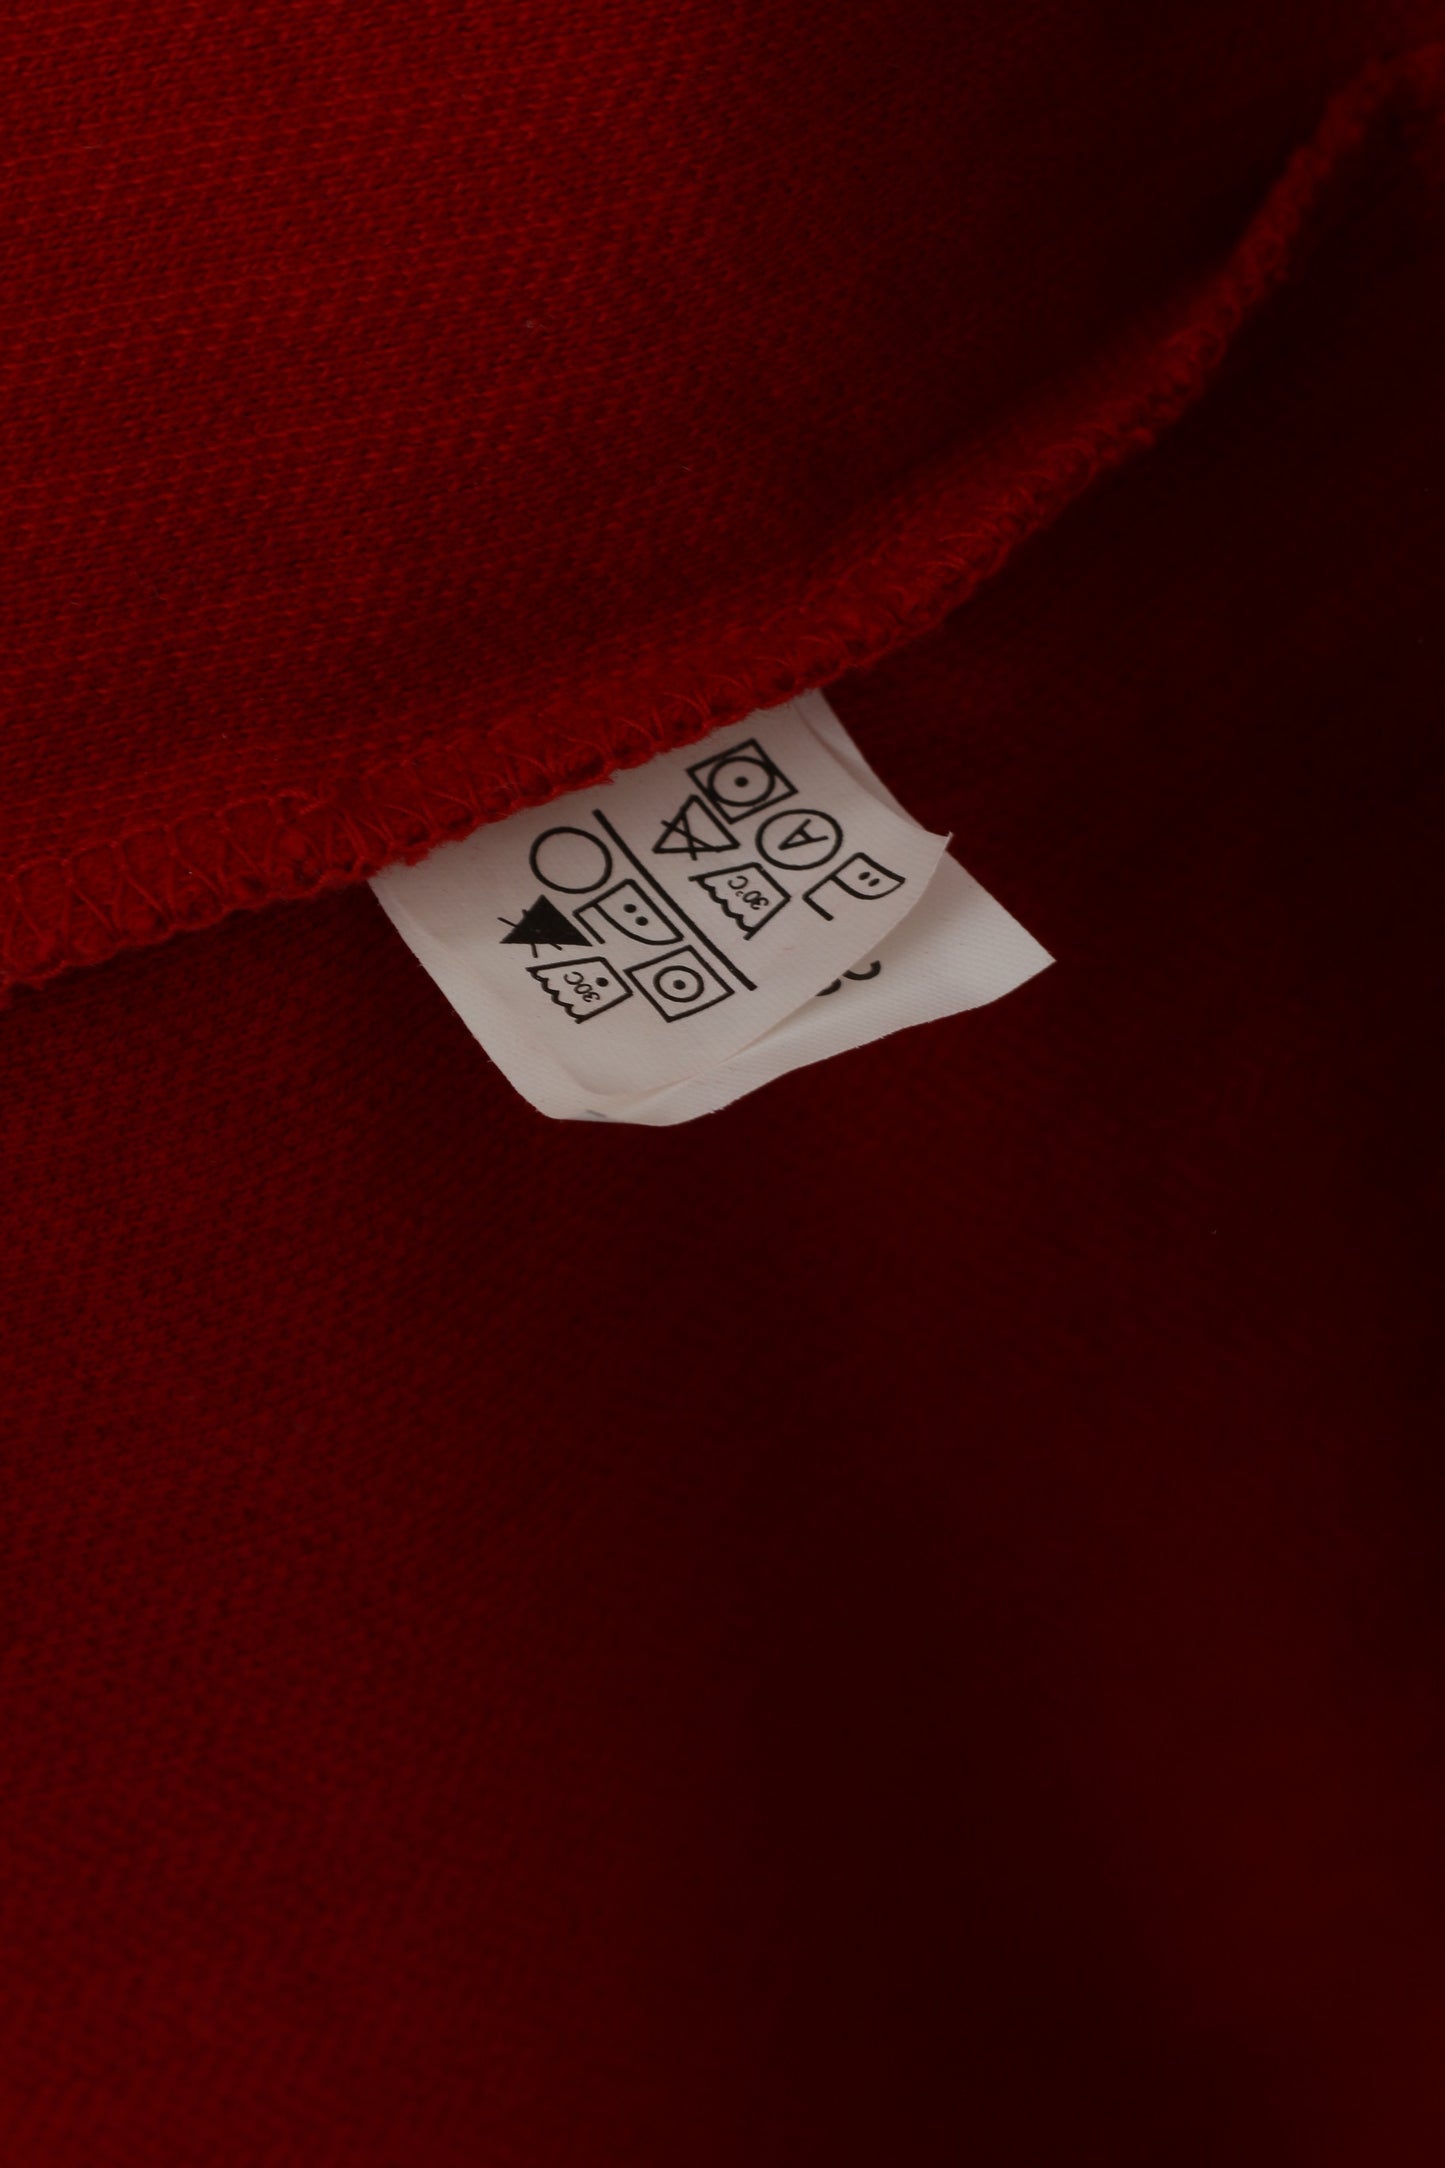 Chaps Homme XL Polo Rouge Manches Longues Coton Sport Logo Boutons Détaillés Haut